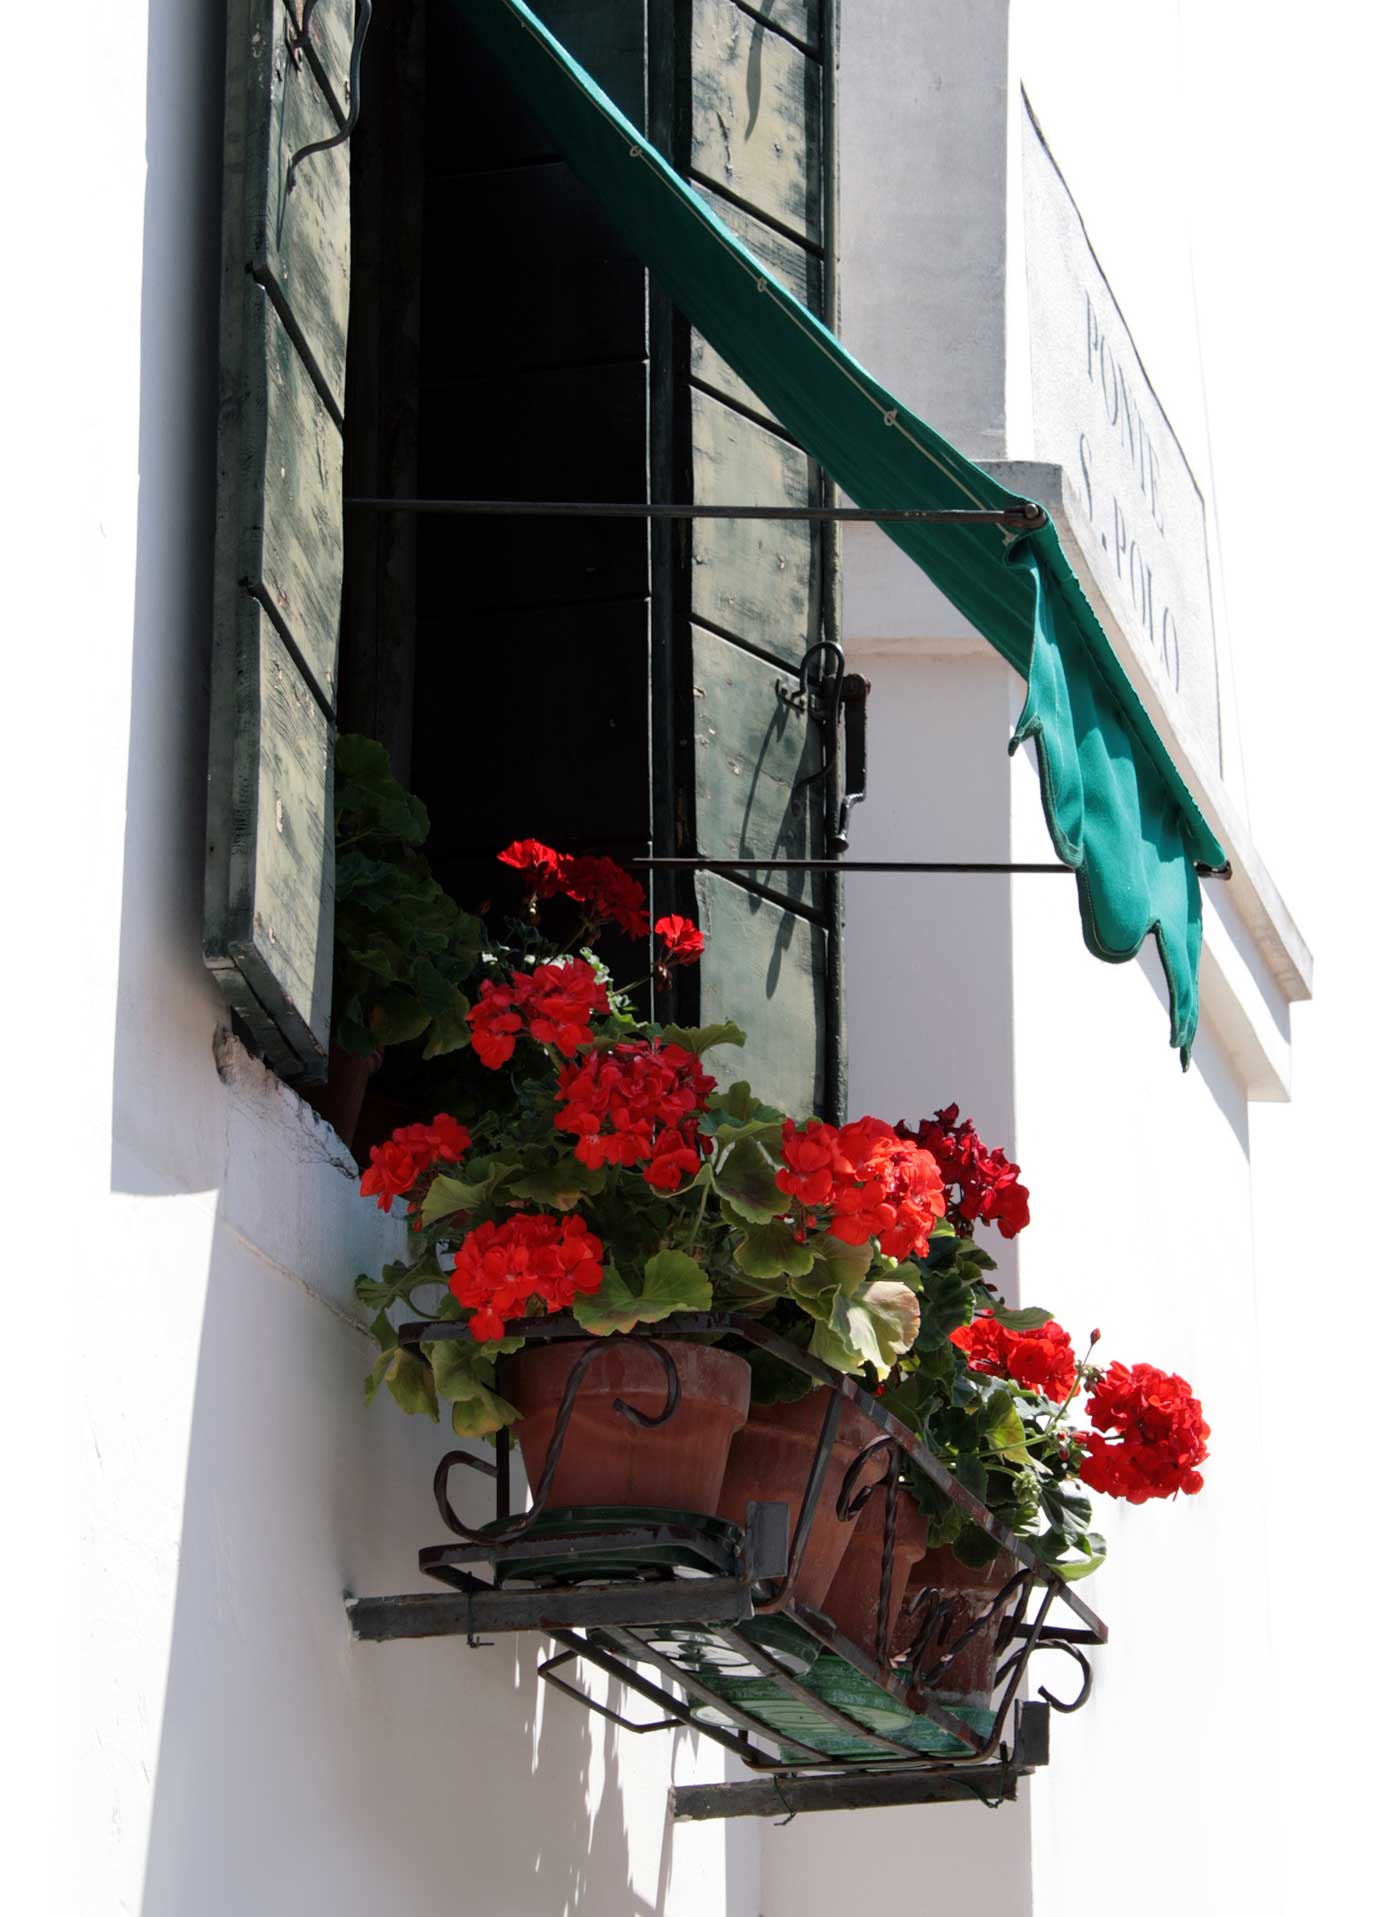 Fenster mit roten Geranien in Venedig